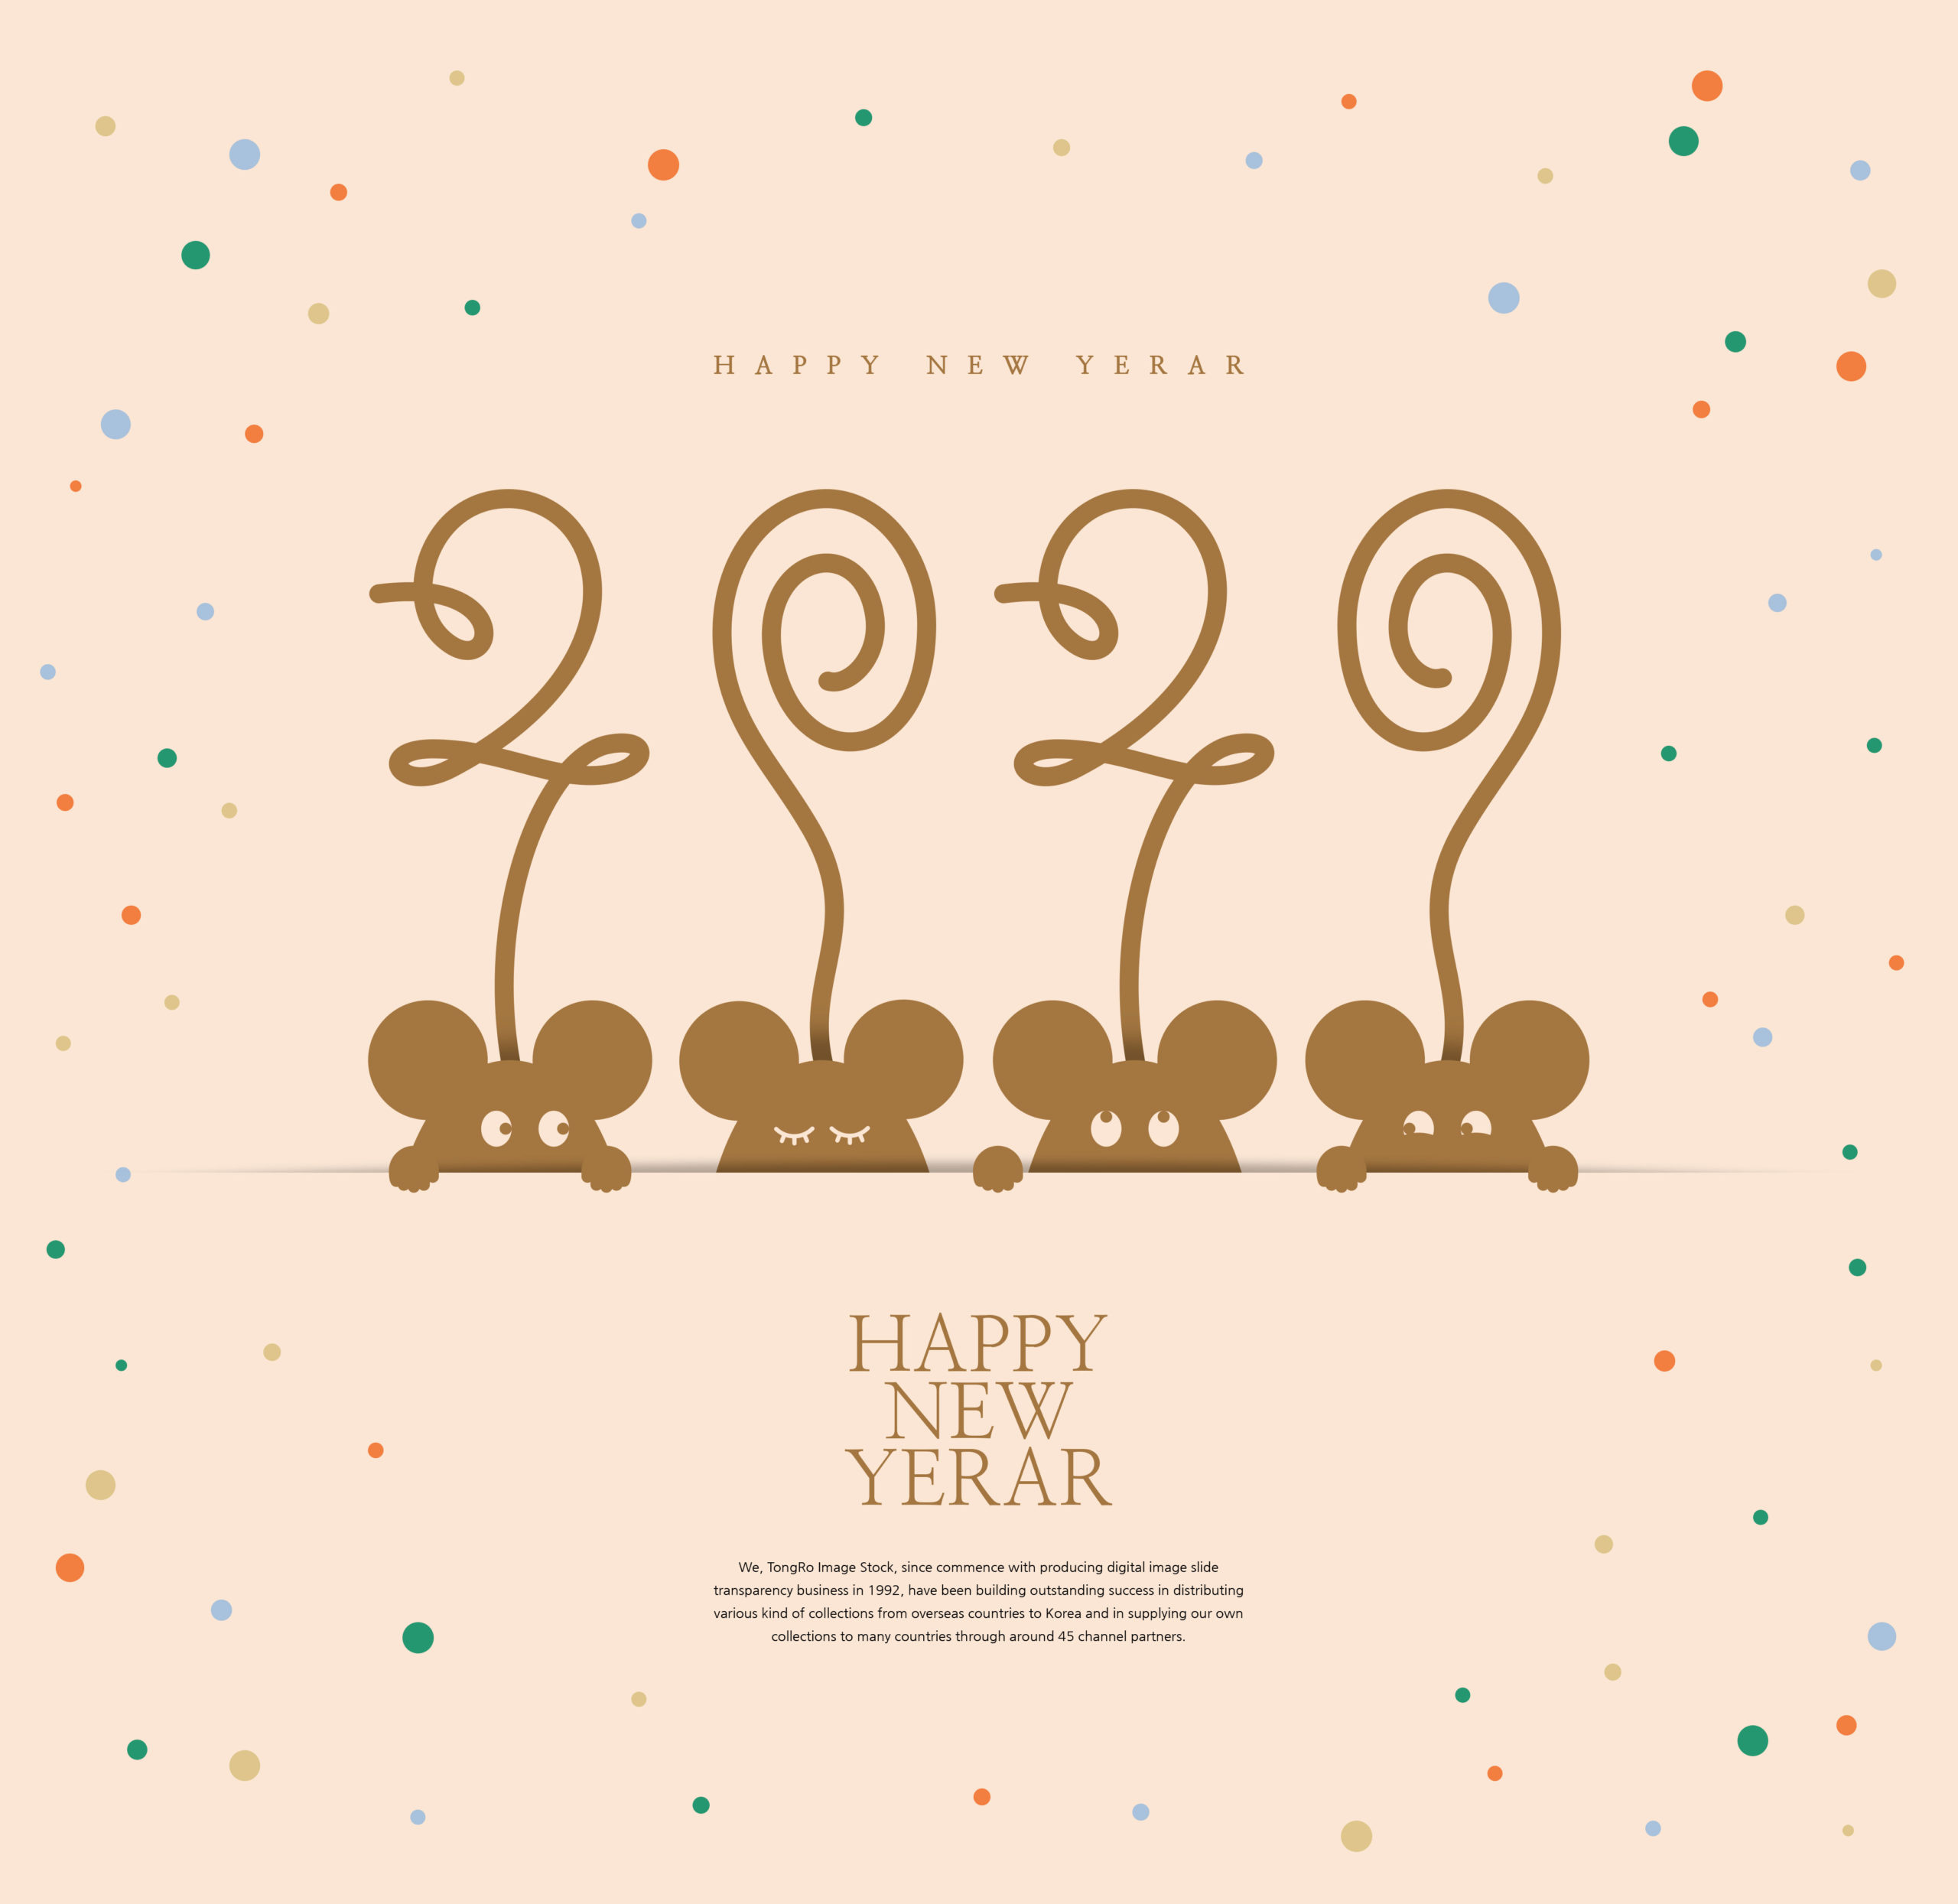 创意2020鼠年新年快乐主题海报模板套装[PSD]插图(2)